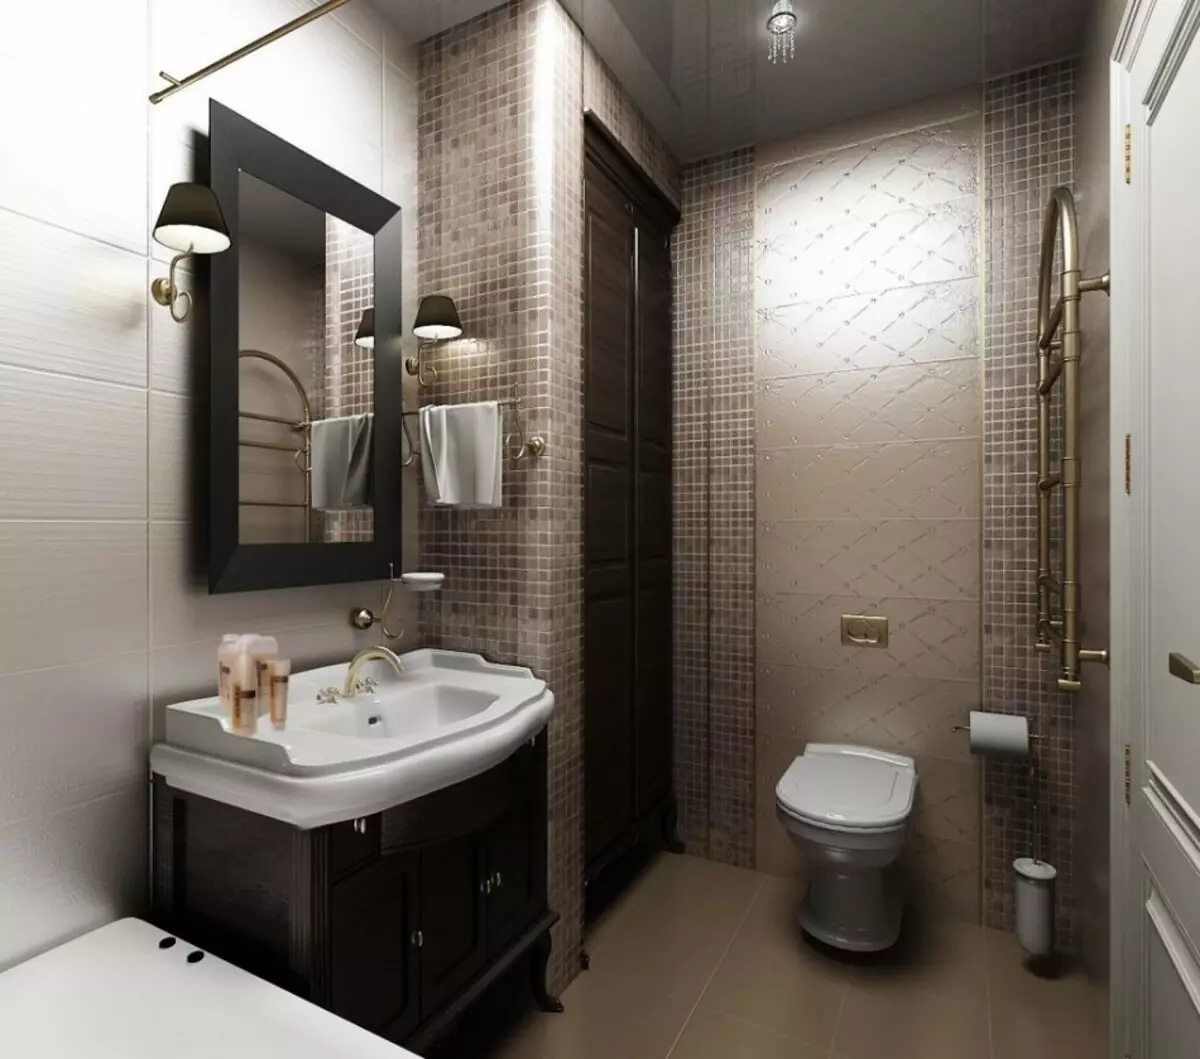 Visokotehnološka kupaonica (62 fotografije): mali dizajn sobe u jednosobnom stanu, izbor namještaja i vodovoda 21442_42